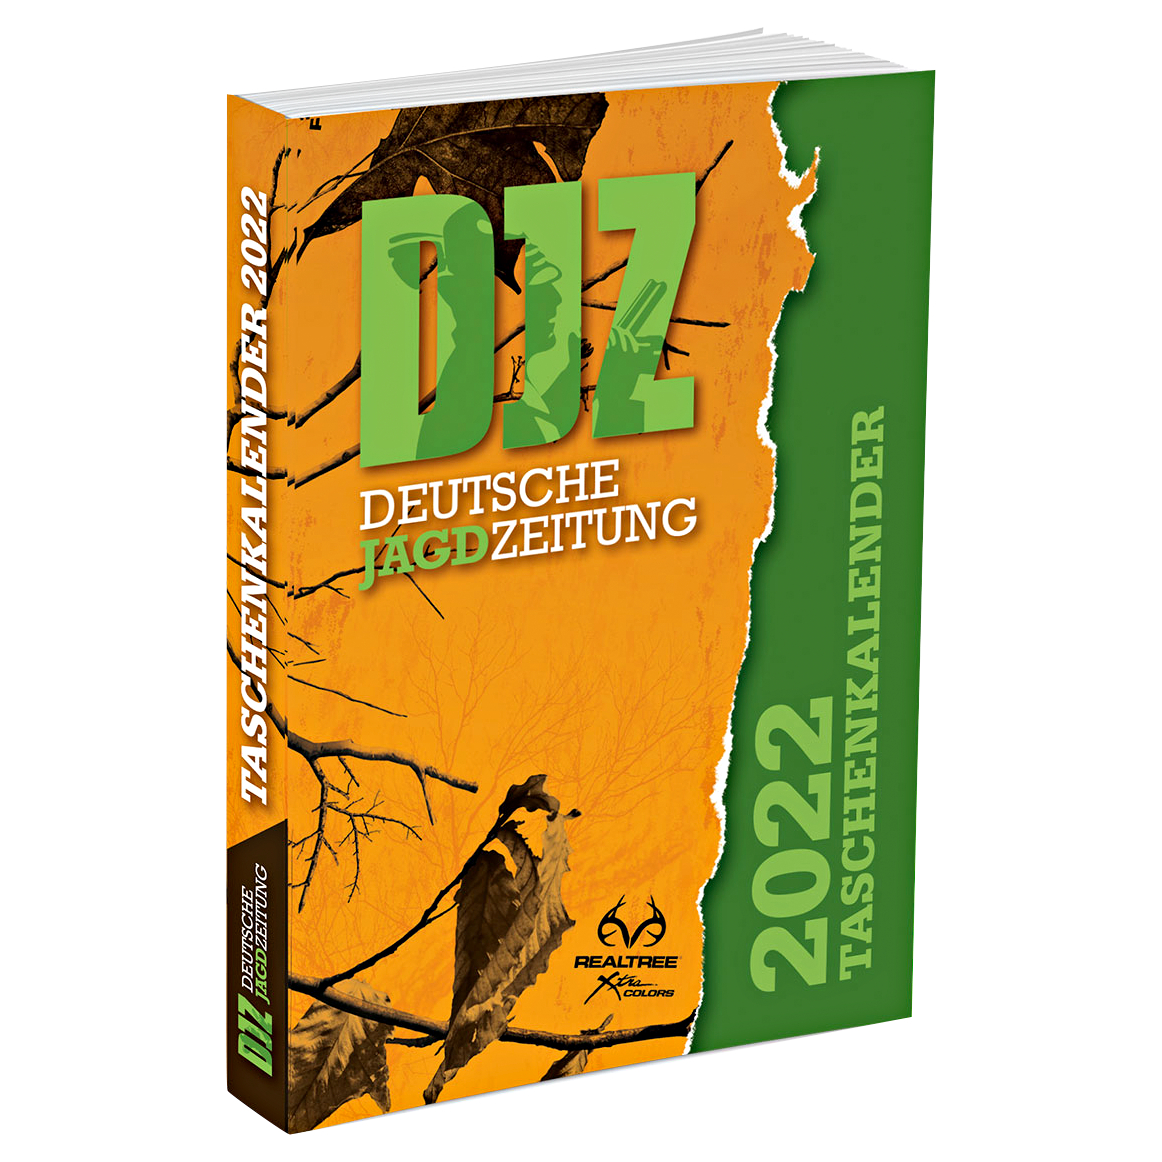 DJZ Edition Taschenkalender 2022 